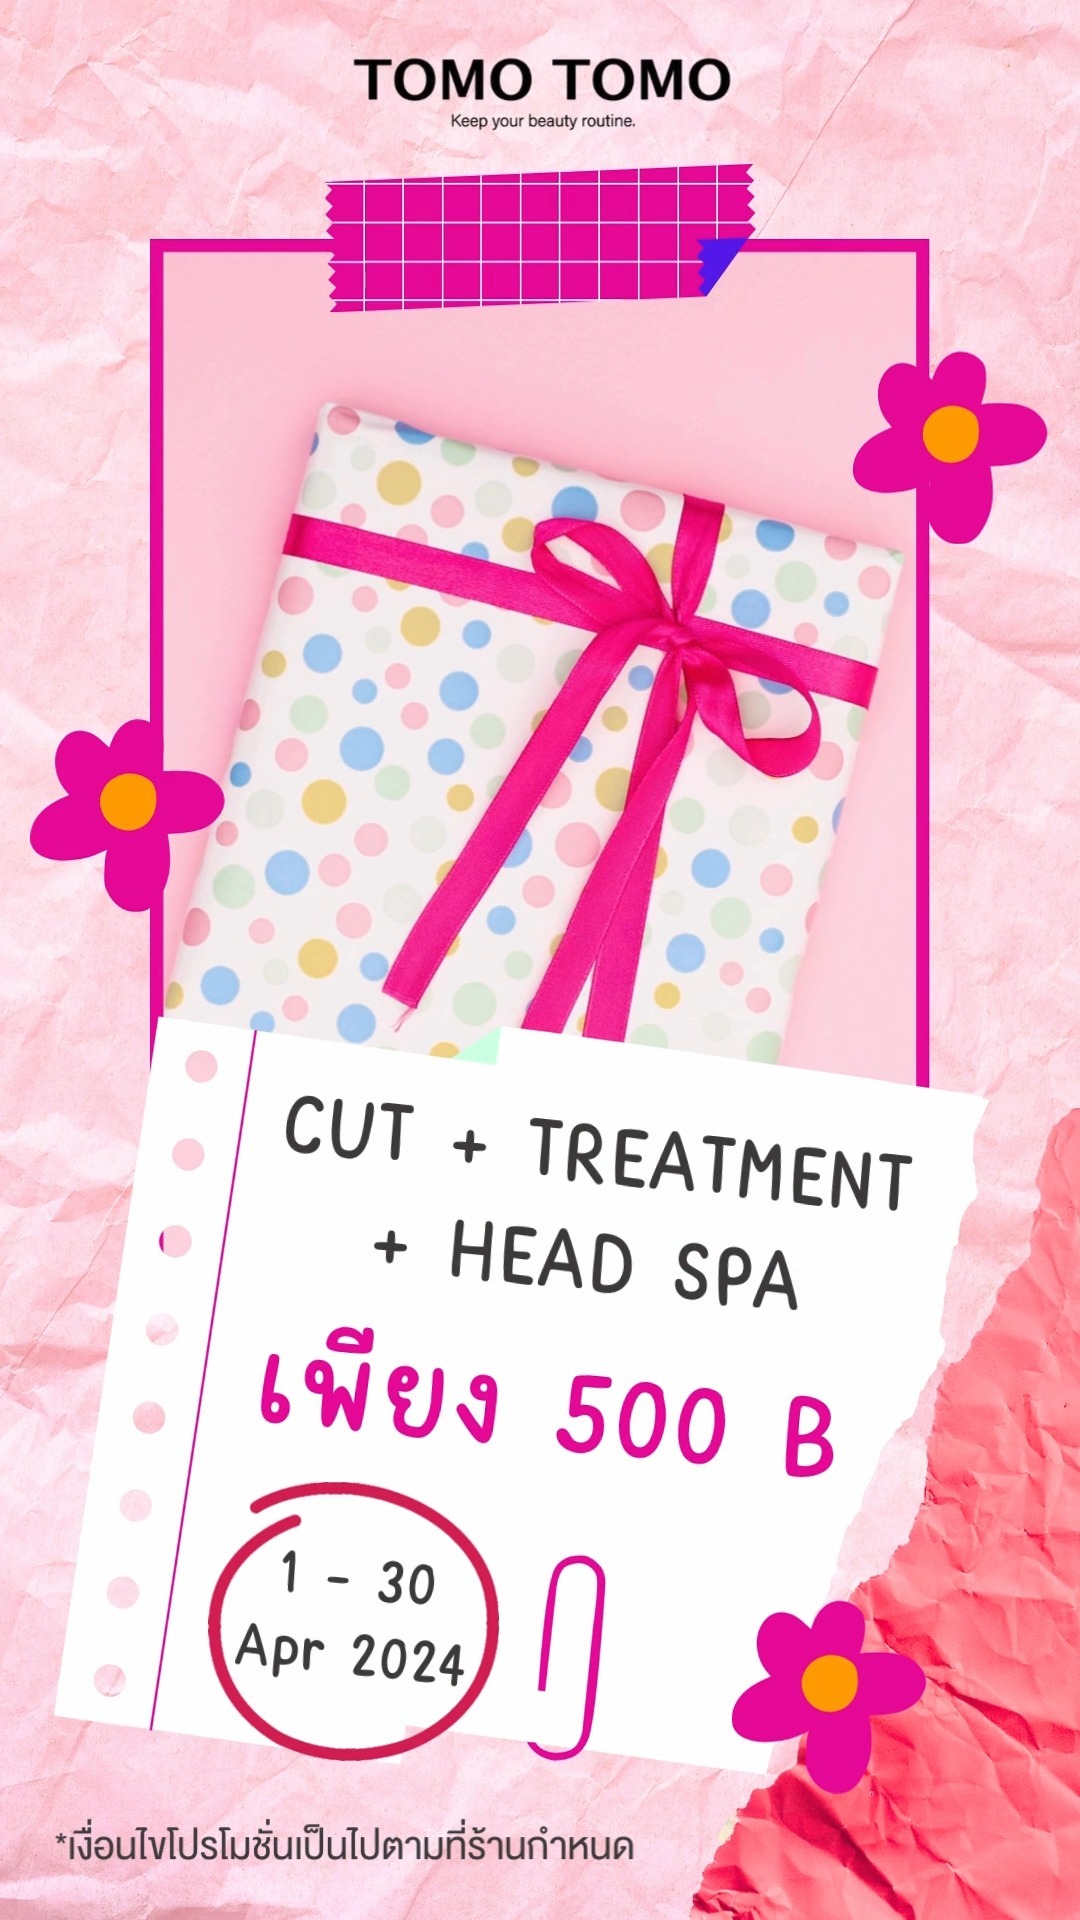 ️โปรทุบราคา️ ผมสวยเต็มอิ่มเพียง 500.-
โอกาสสัมผัสความพิเศษของร้านทำผมสไตล์ญี่ปุ่นมาแล้ว!
ใครอยากเปลี่ยนลุค และได้ผมสวยๆกลับบ้านต้องรีบมาจัด❣️
.
โปรโมชั่นสุดพิเศษ 3 เมนู 500 THB
 Haircut
 Hair Treatment
 Head Spa
.
🗓Period : 1 - 30 April 2024
.
ทุกขั้นตอนดูแลโดยสไตลิสต์มากฝีมือ ให้ผมของคุณสวยสุขภาพดี
.
โปรปังขนาดนี้ไม่ได้มีบ่อยจริงๆ! รีบจองกันเข้ามานะ
.
จองคิวหรือสอบถามข้อมูล🏻
️ Tel : 02-009-2616 
 LINE : tomotomo (https://lin.ee/GNJgHJO)
Online Booking : https://bit.ly/3P8fOQO  Open : Mon-Sun 10:00-18:30
 Close : Every Wednesday, Third Thursday of the month
🗺️ Map : https://bit.ly/48G0rGf
.
#hairstyle #hairtreatment #hairfashion #hairsalon #promotion #haircolor #ทำผม #แนะนำร้านทำผม #ร้านทำผมทองหล่อ #สระไดร์ #สระผม
*เงื่อนไขเป็นไปตามที่ร้านกำหนด